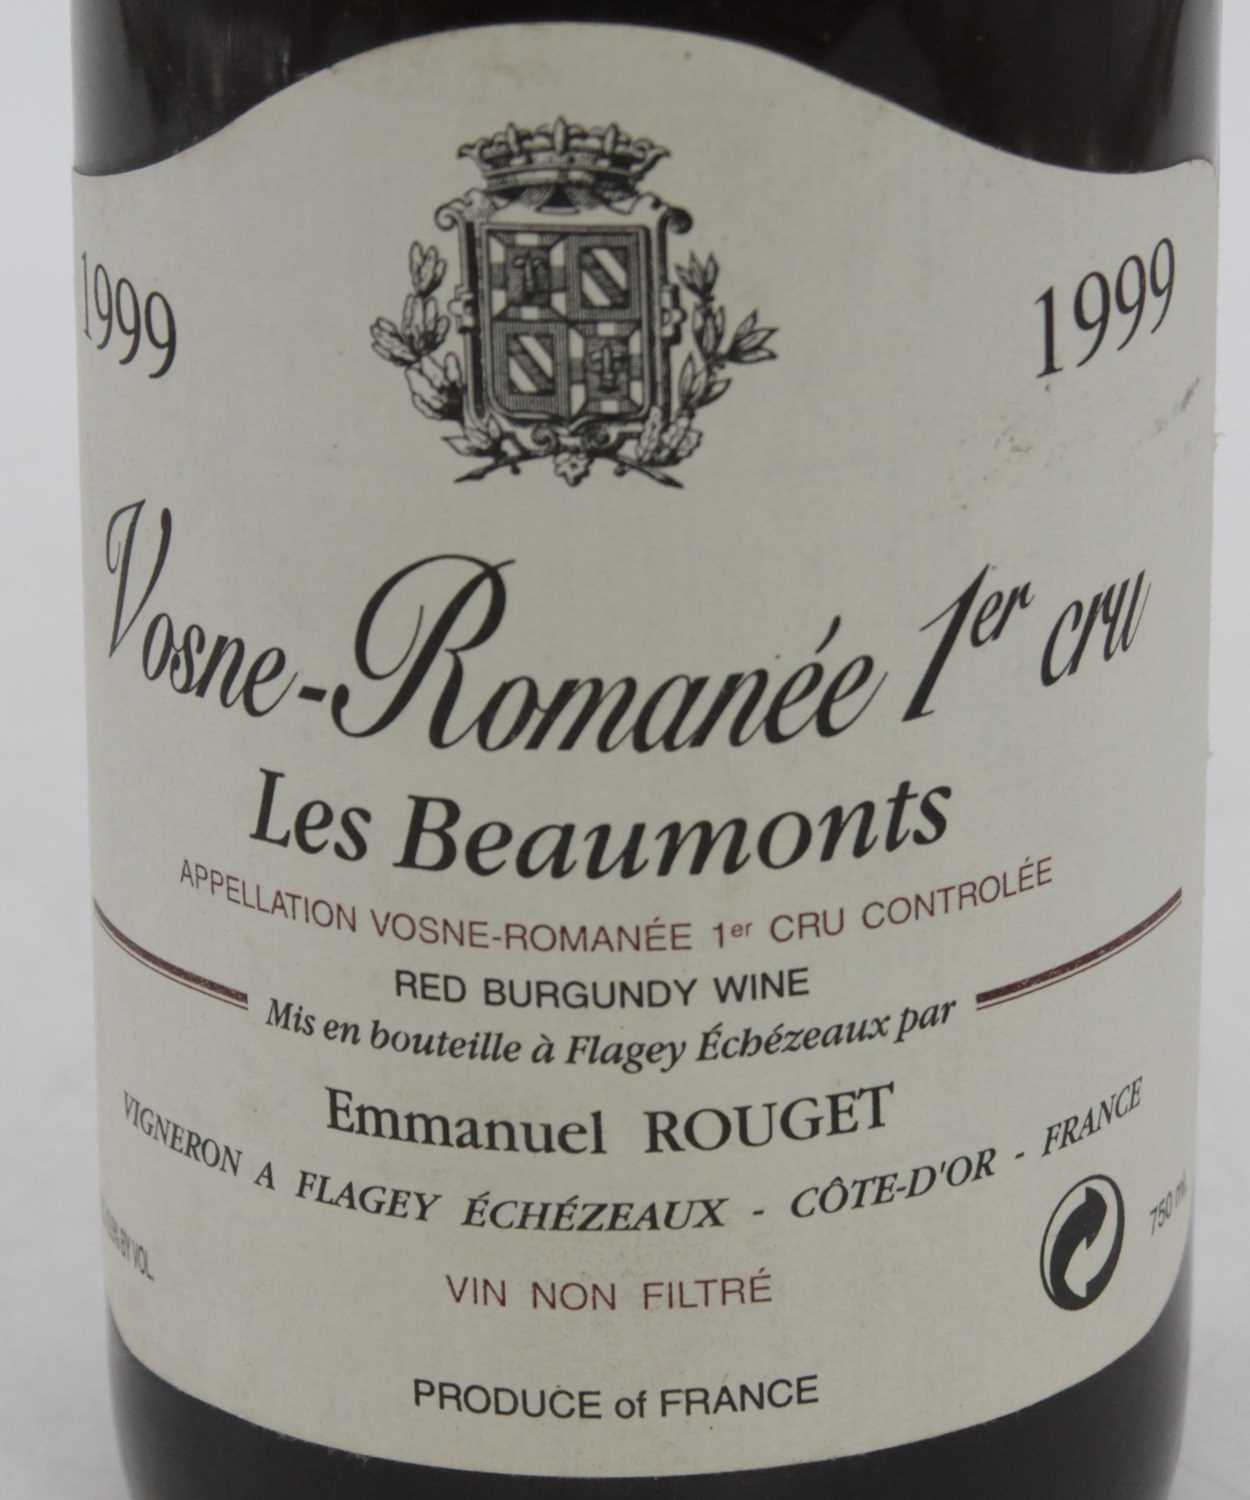 Emmanuel Rouget Les Beaux Monts Premier Cru, 1999, Vosne-Romanee, one bottle - Image 3 of 4